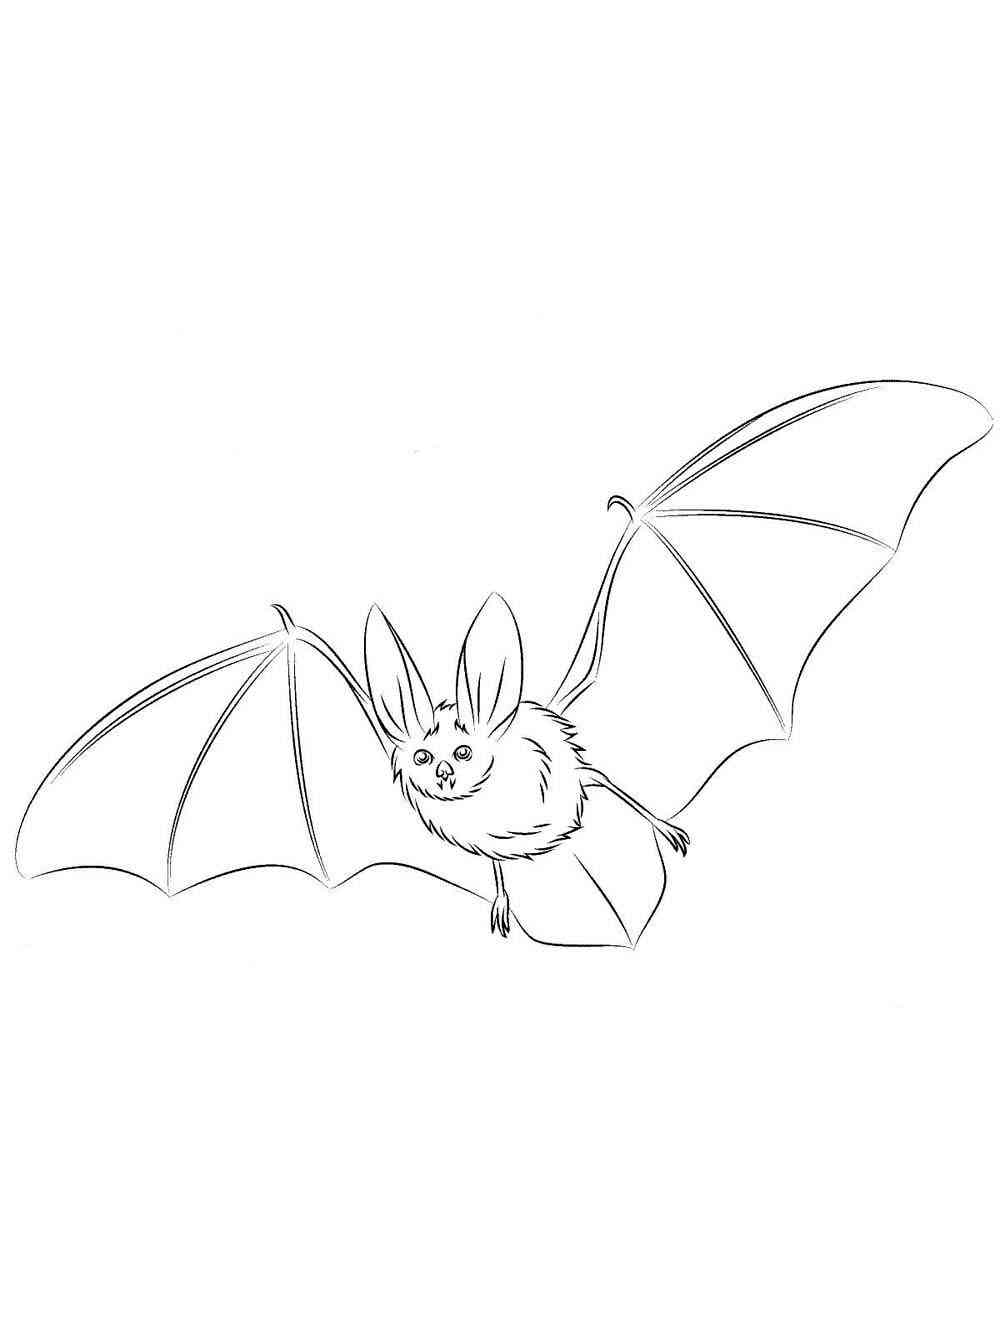 Fruit Bat coloring page